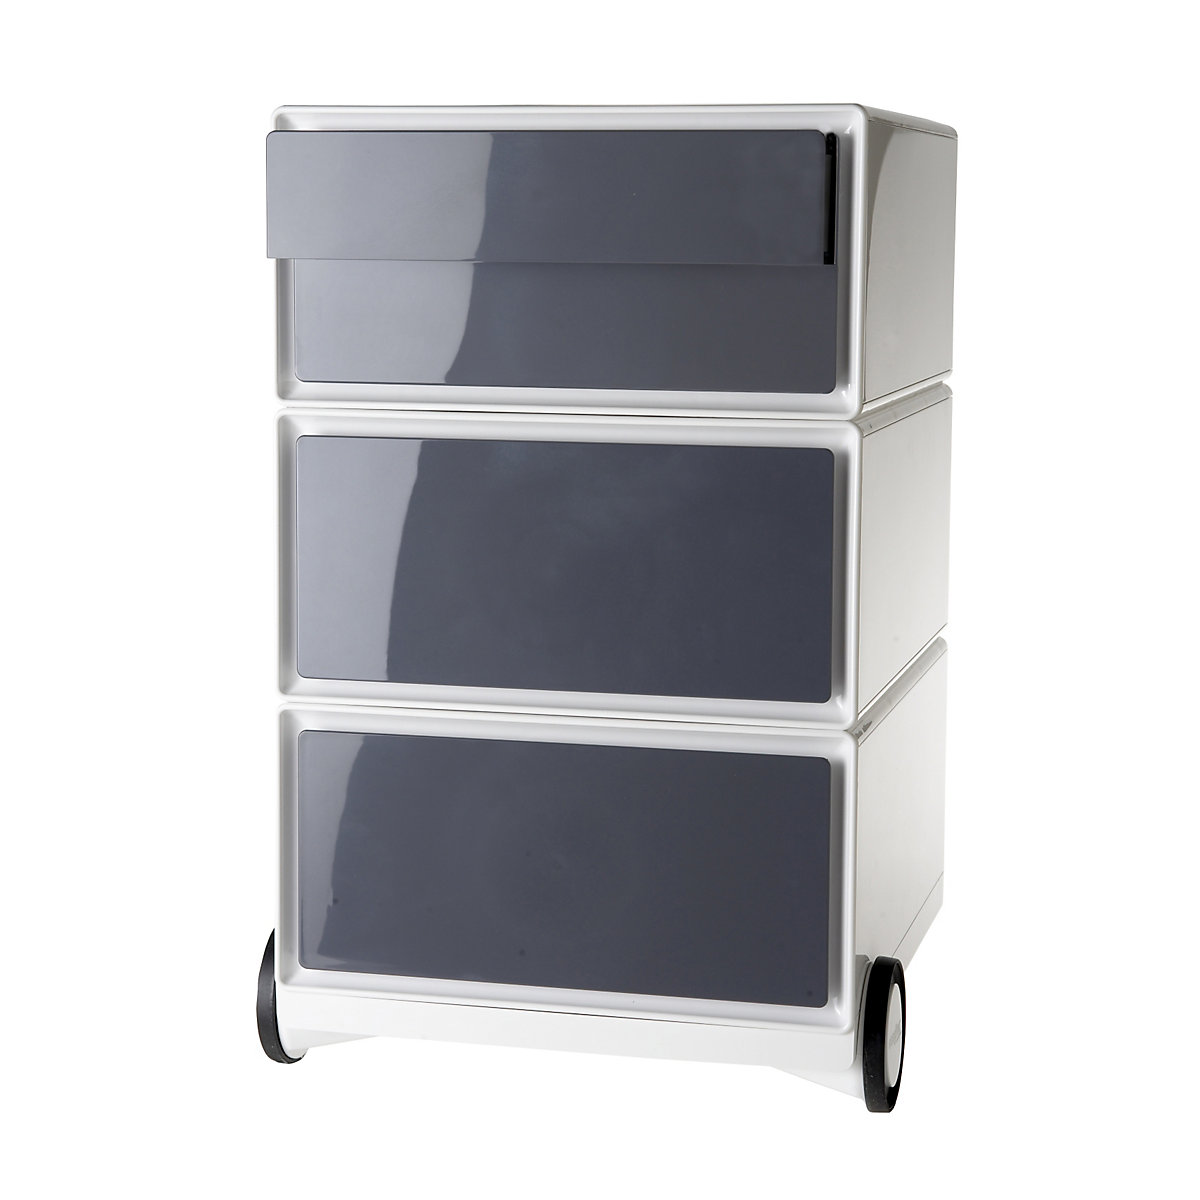 Pokretni ladičar easyBox® – Paperflow, 2 ladice, 2 plitke ladice, u bijeloj / antracit boji